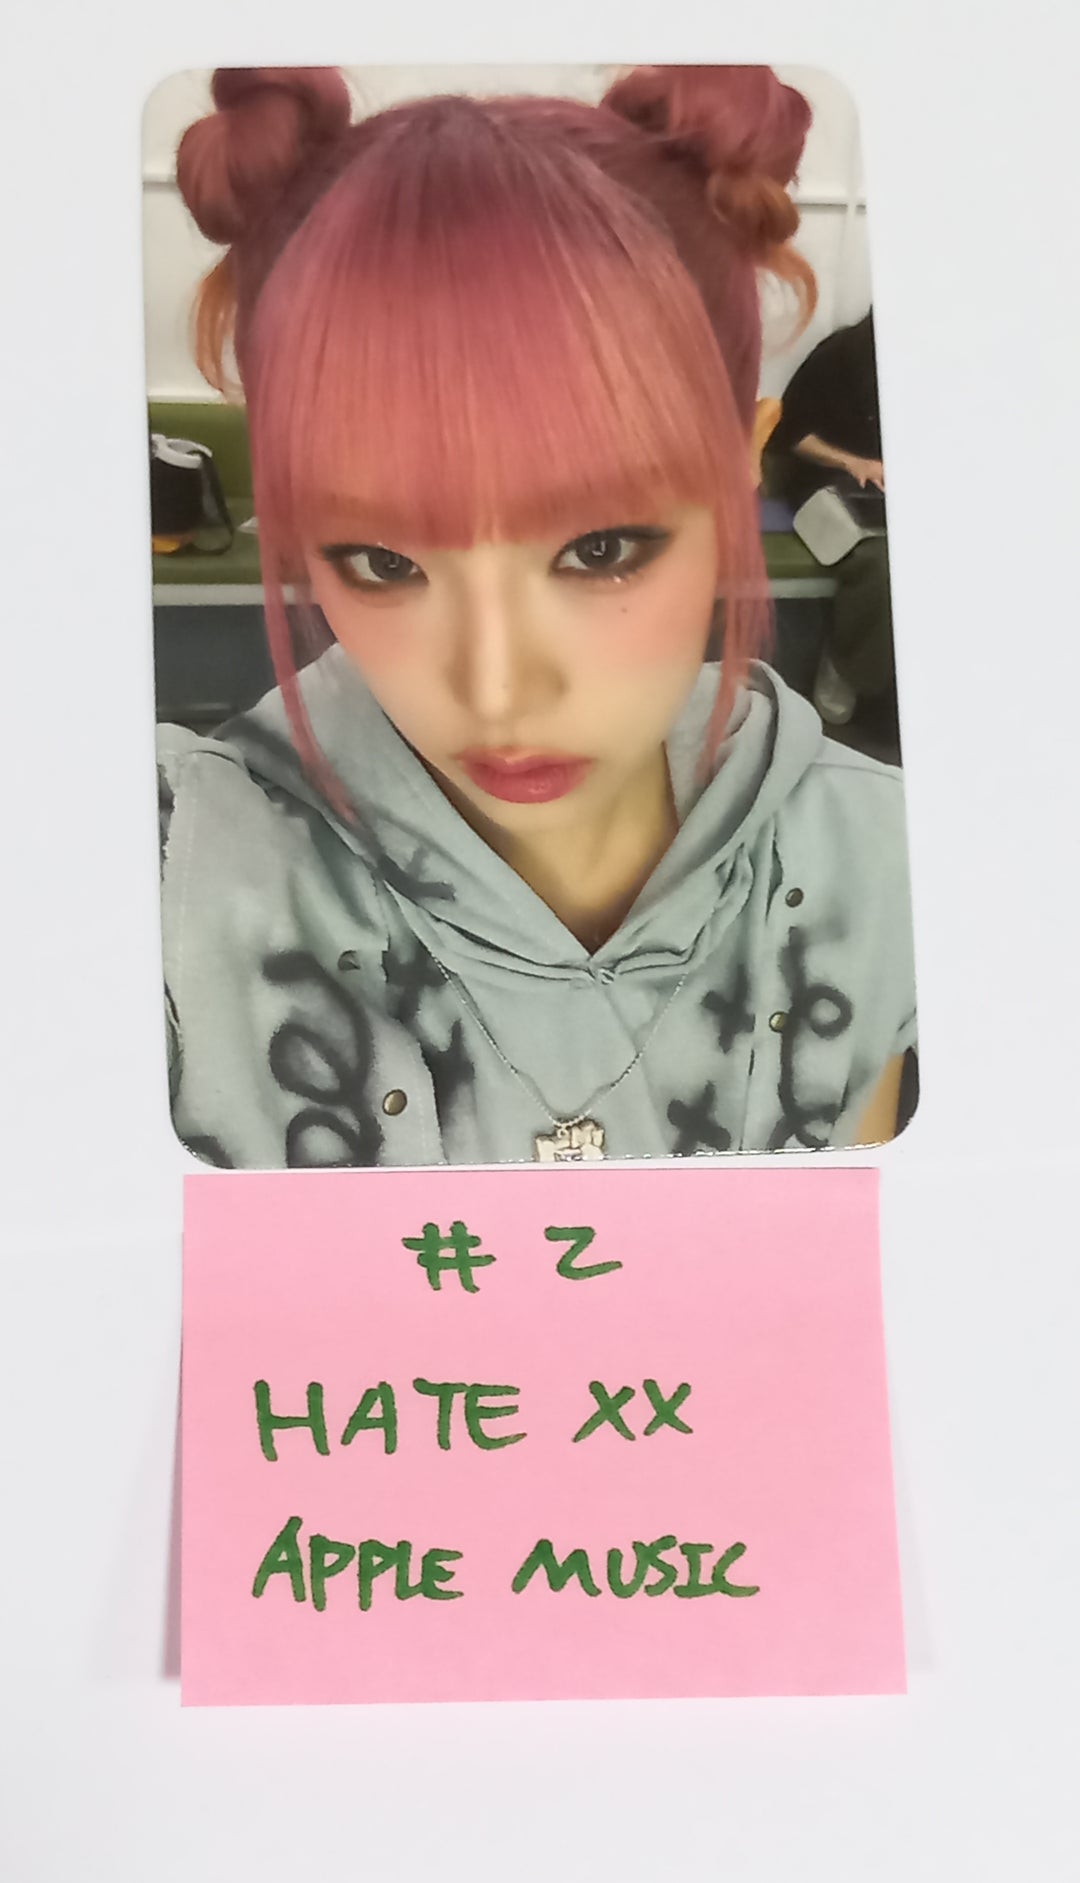 イェナ「HATE XX」 - Apple Music ファンサインイベントフォトカード [23.09.21]